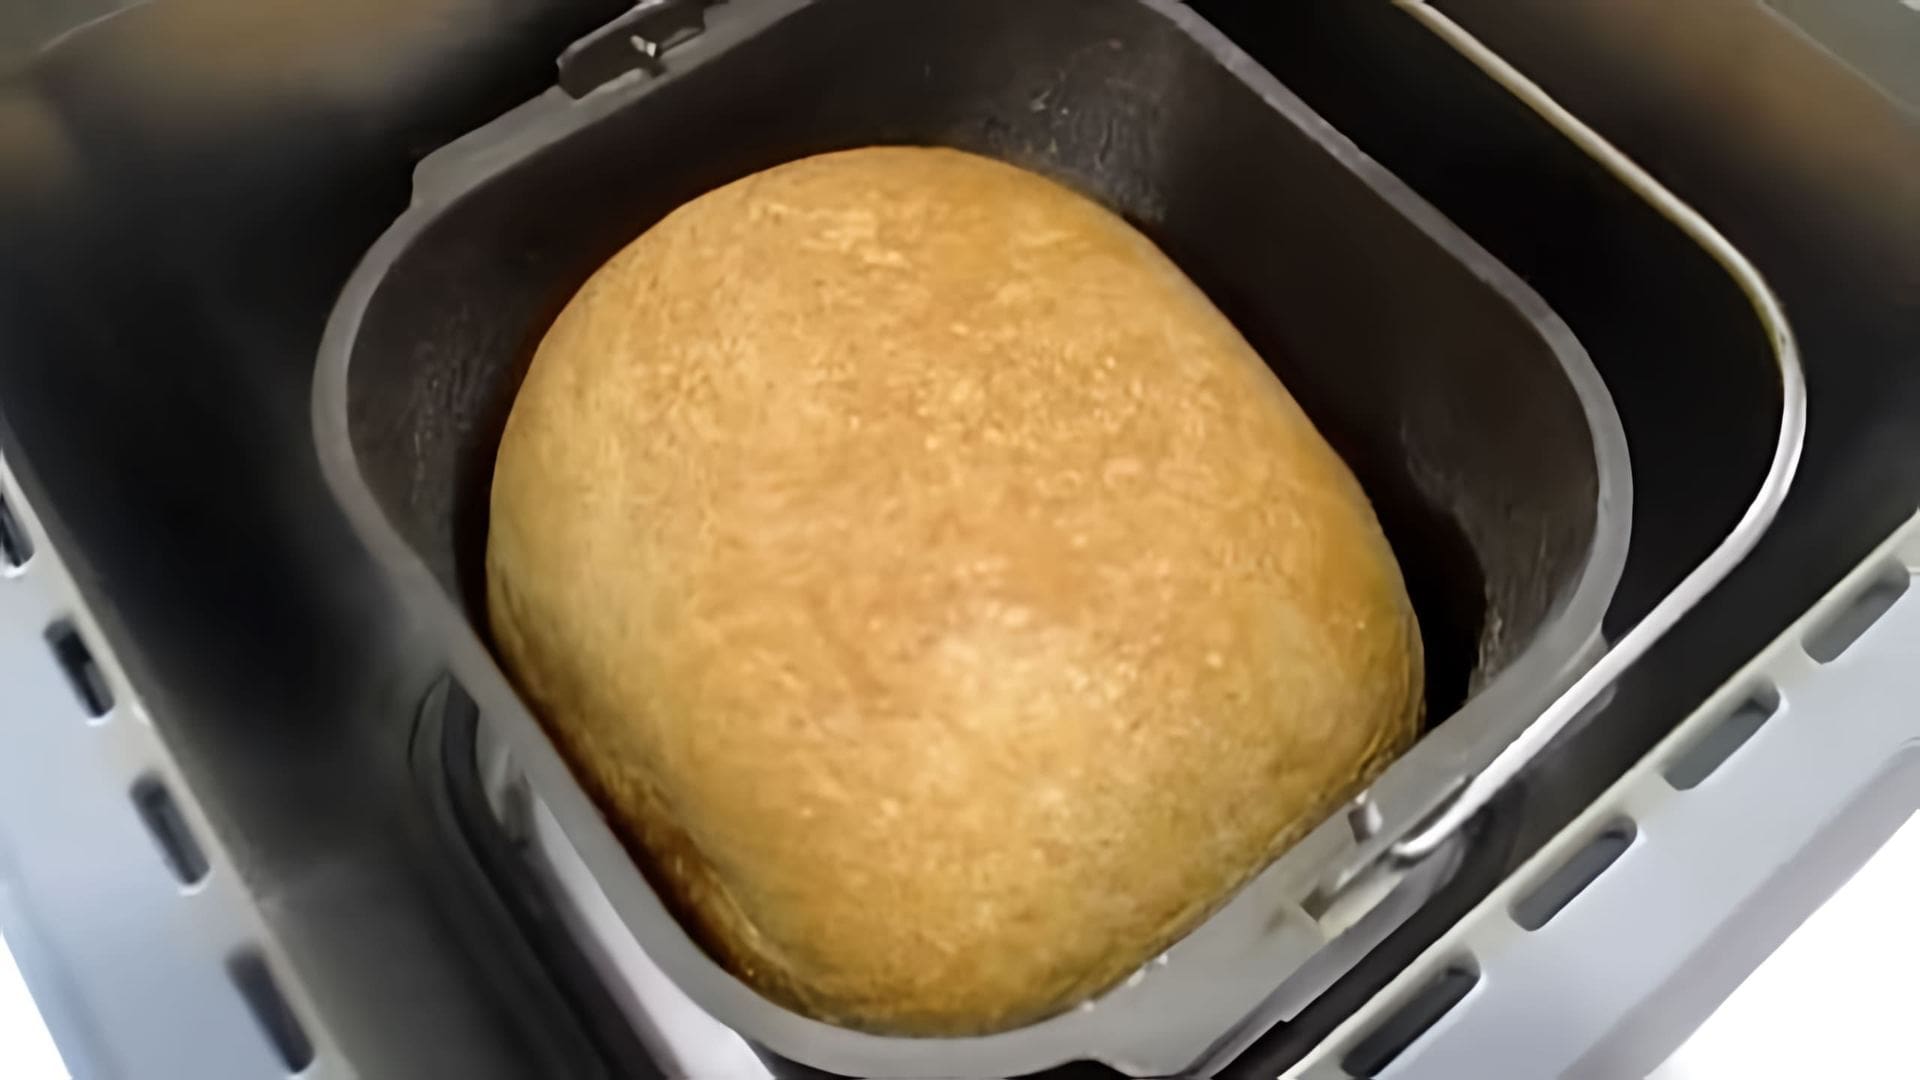 Видео как испечь французский хлеб в хлебопечке, используя простой рецепт из муки, сухих дрожжей, соли, воды и сахара